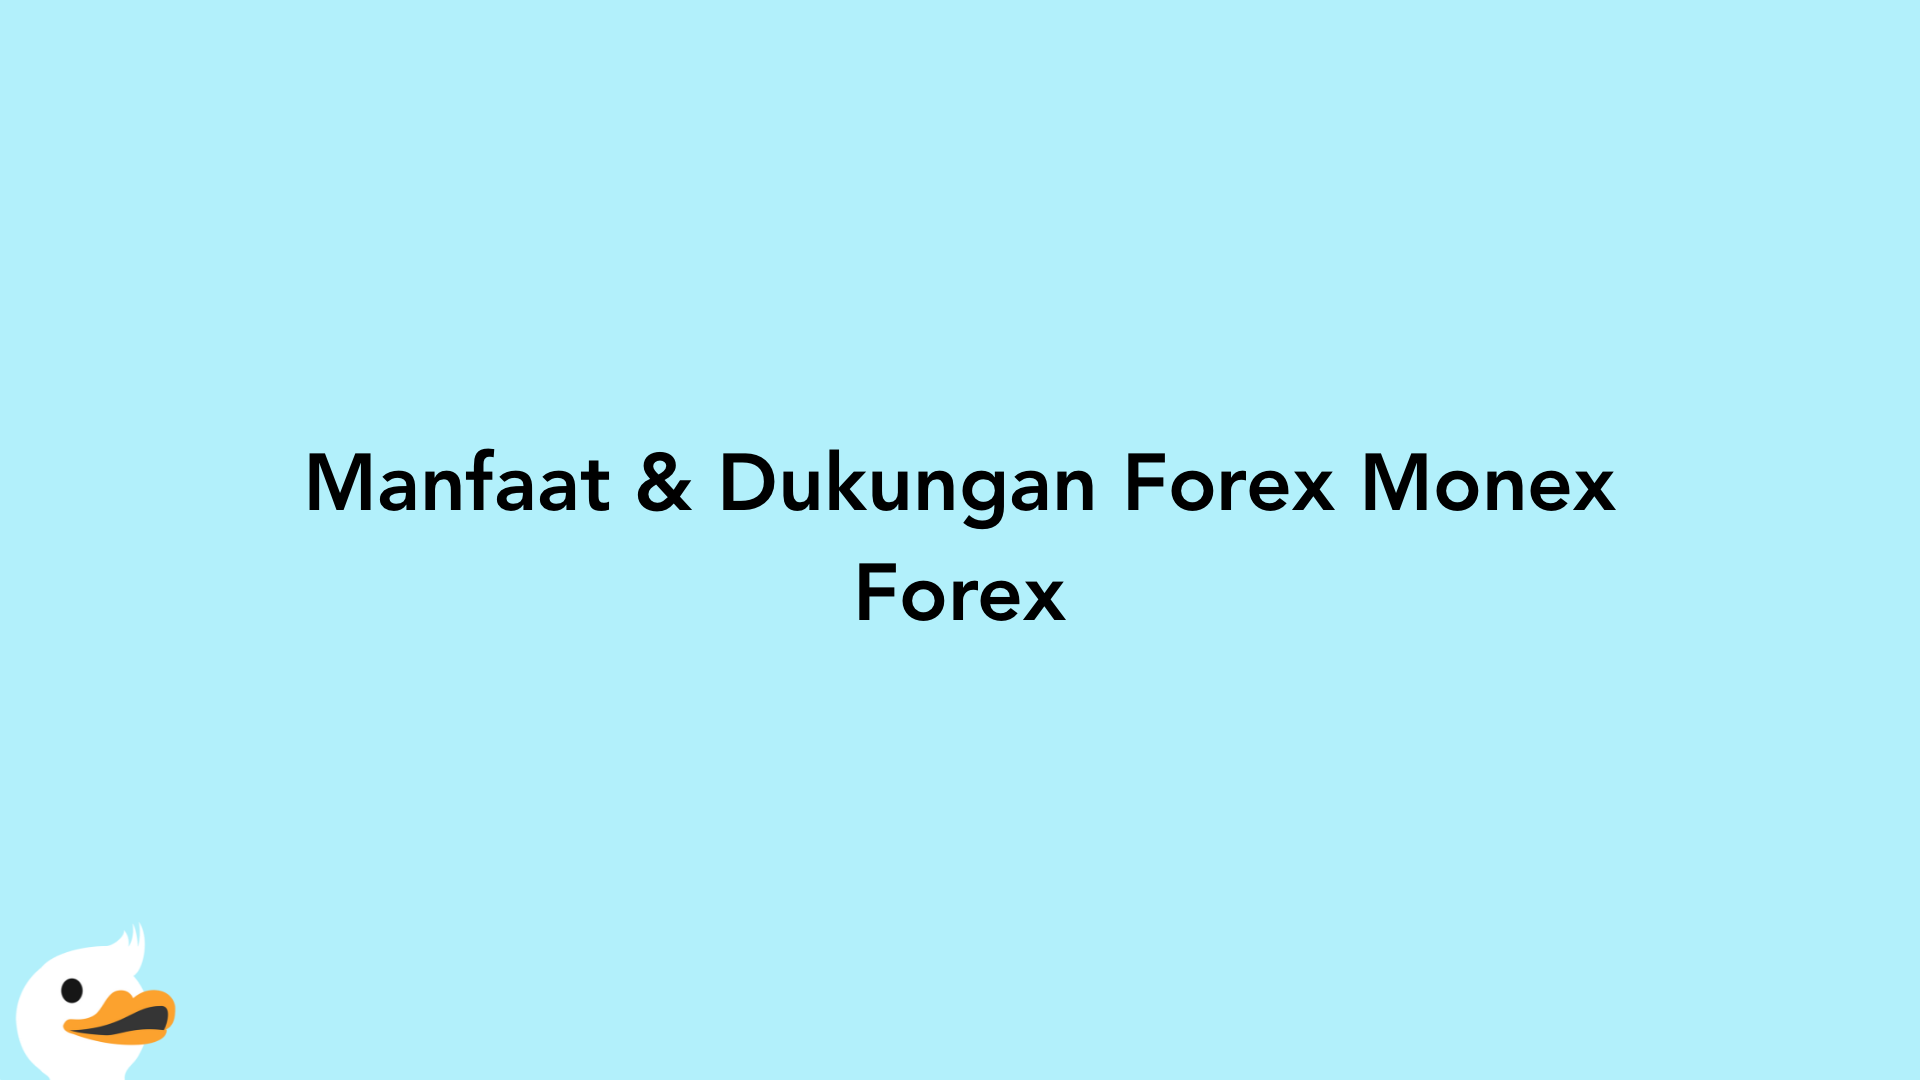 Manfaat & Dukungan Forex Monex Forex